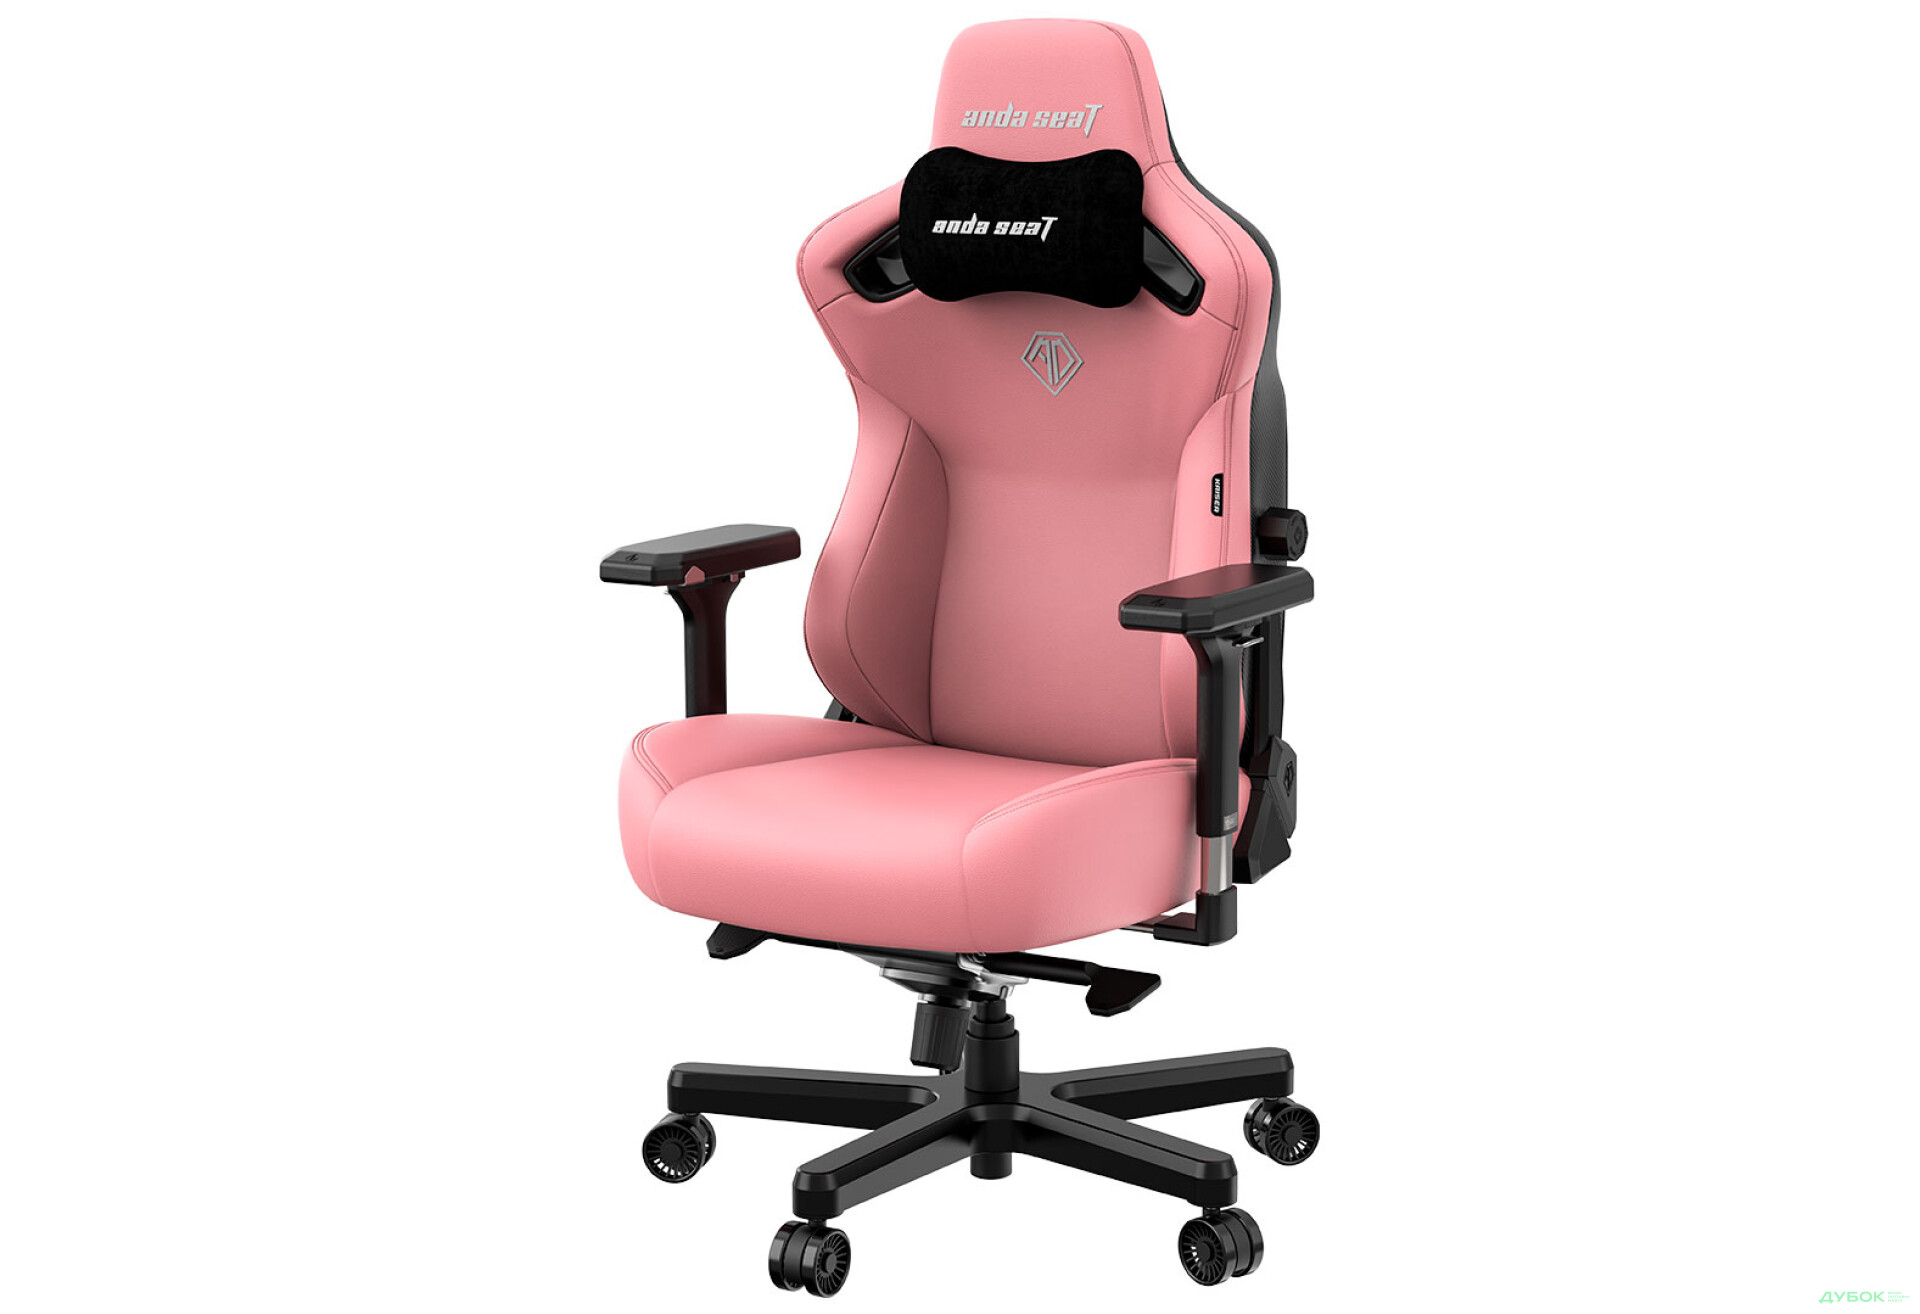 Фото 4 - Компьютерное кресло Anda Seat Kaiser 3 72x57x136 см игровое, розовое